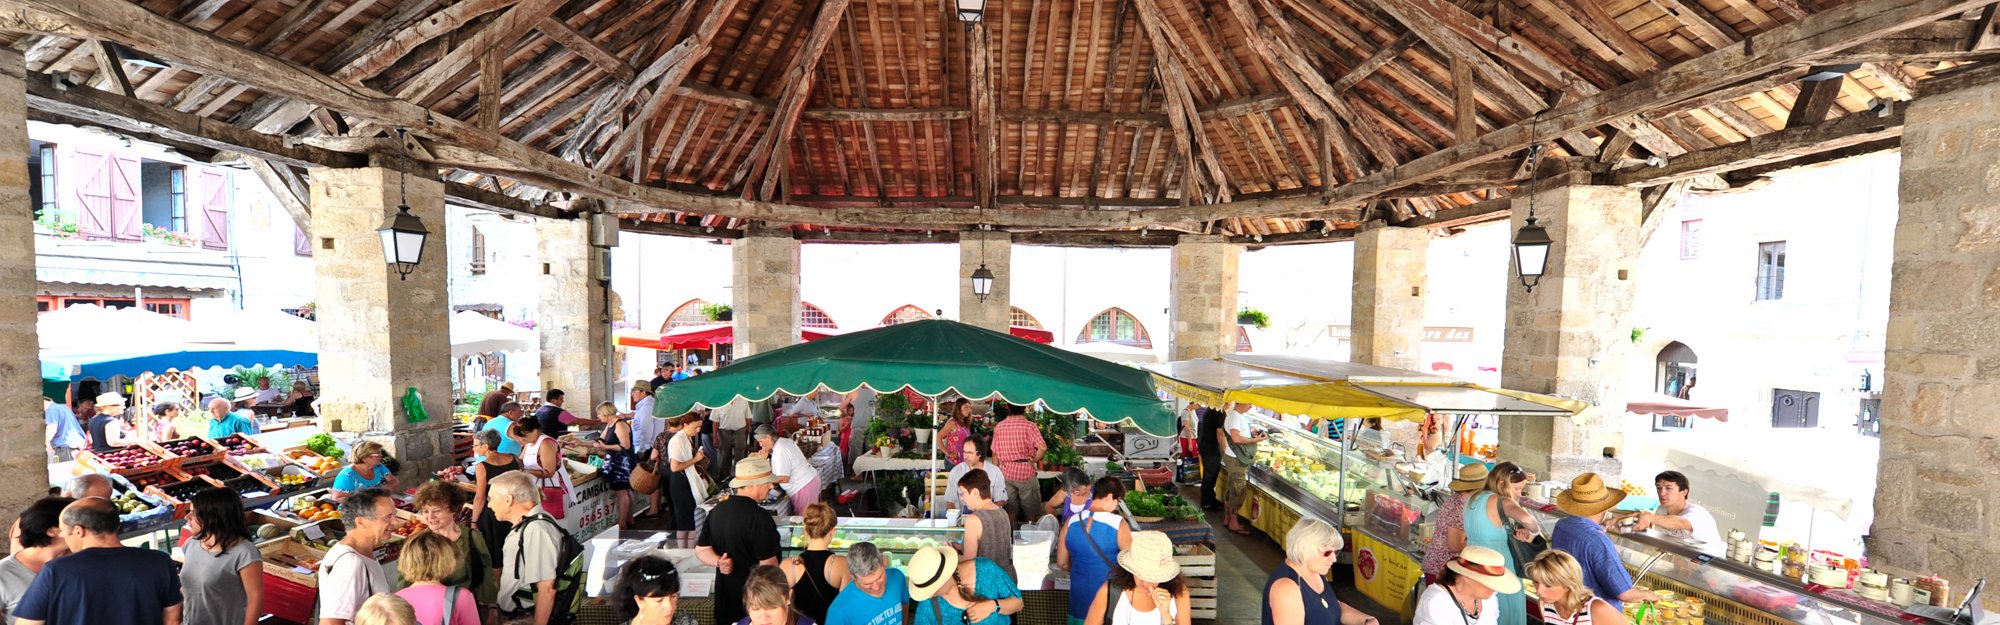 Martel covered market